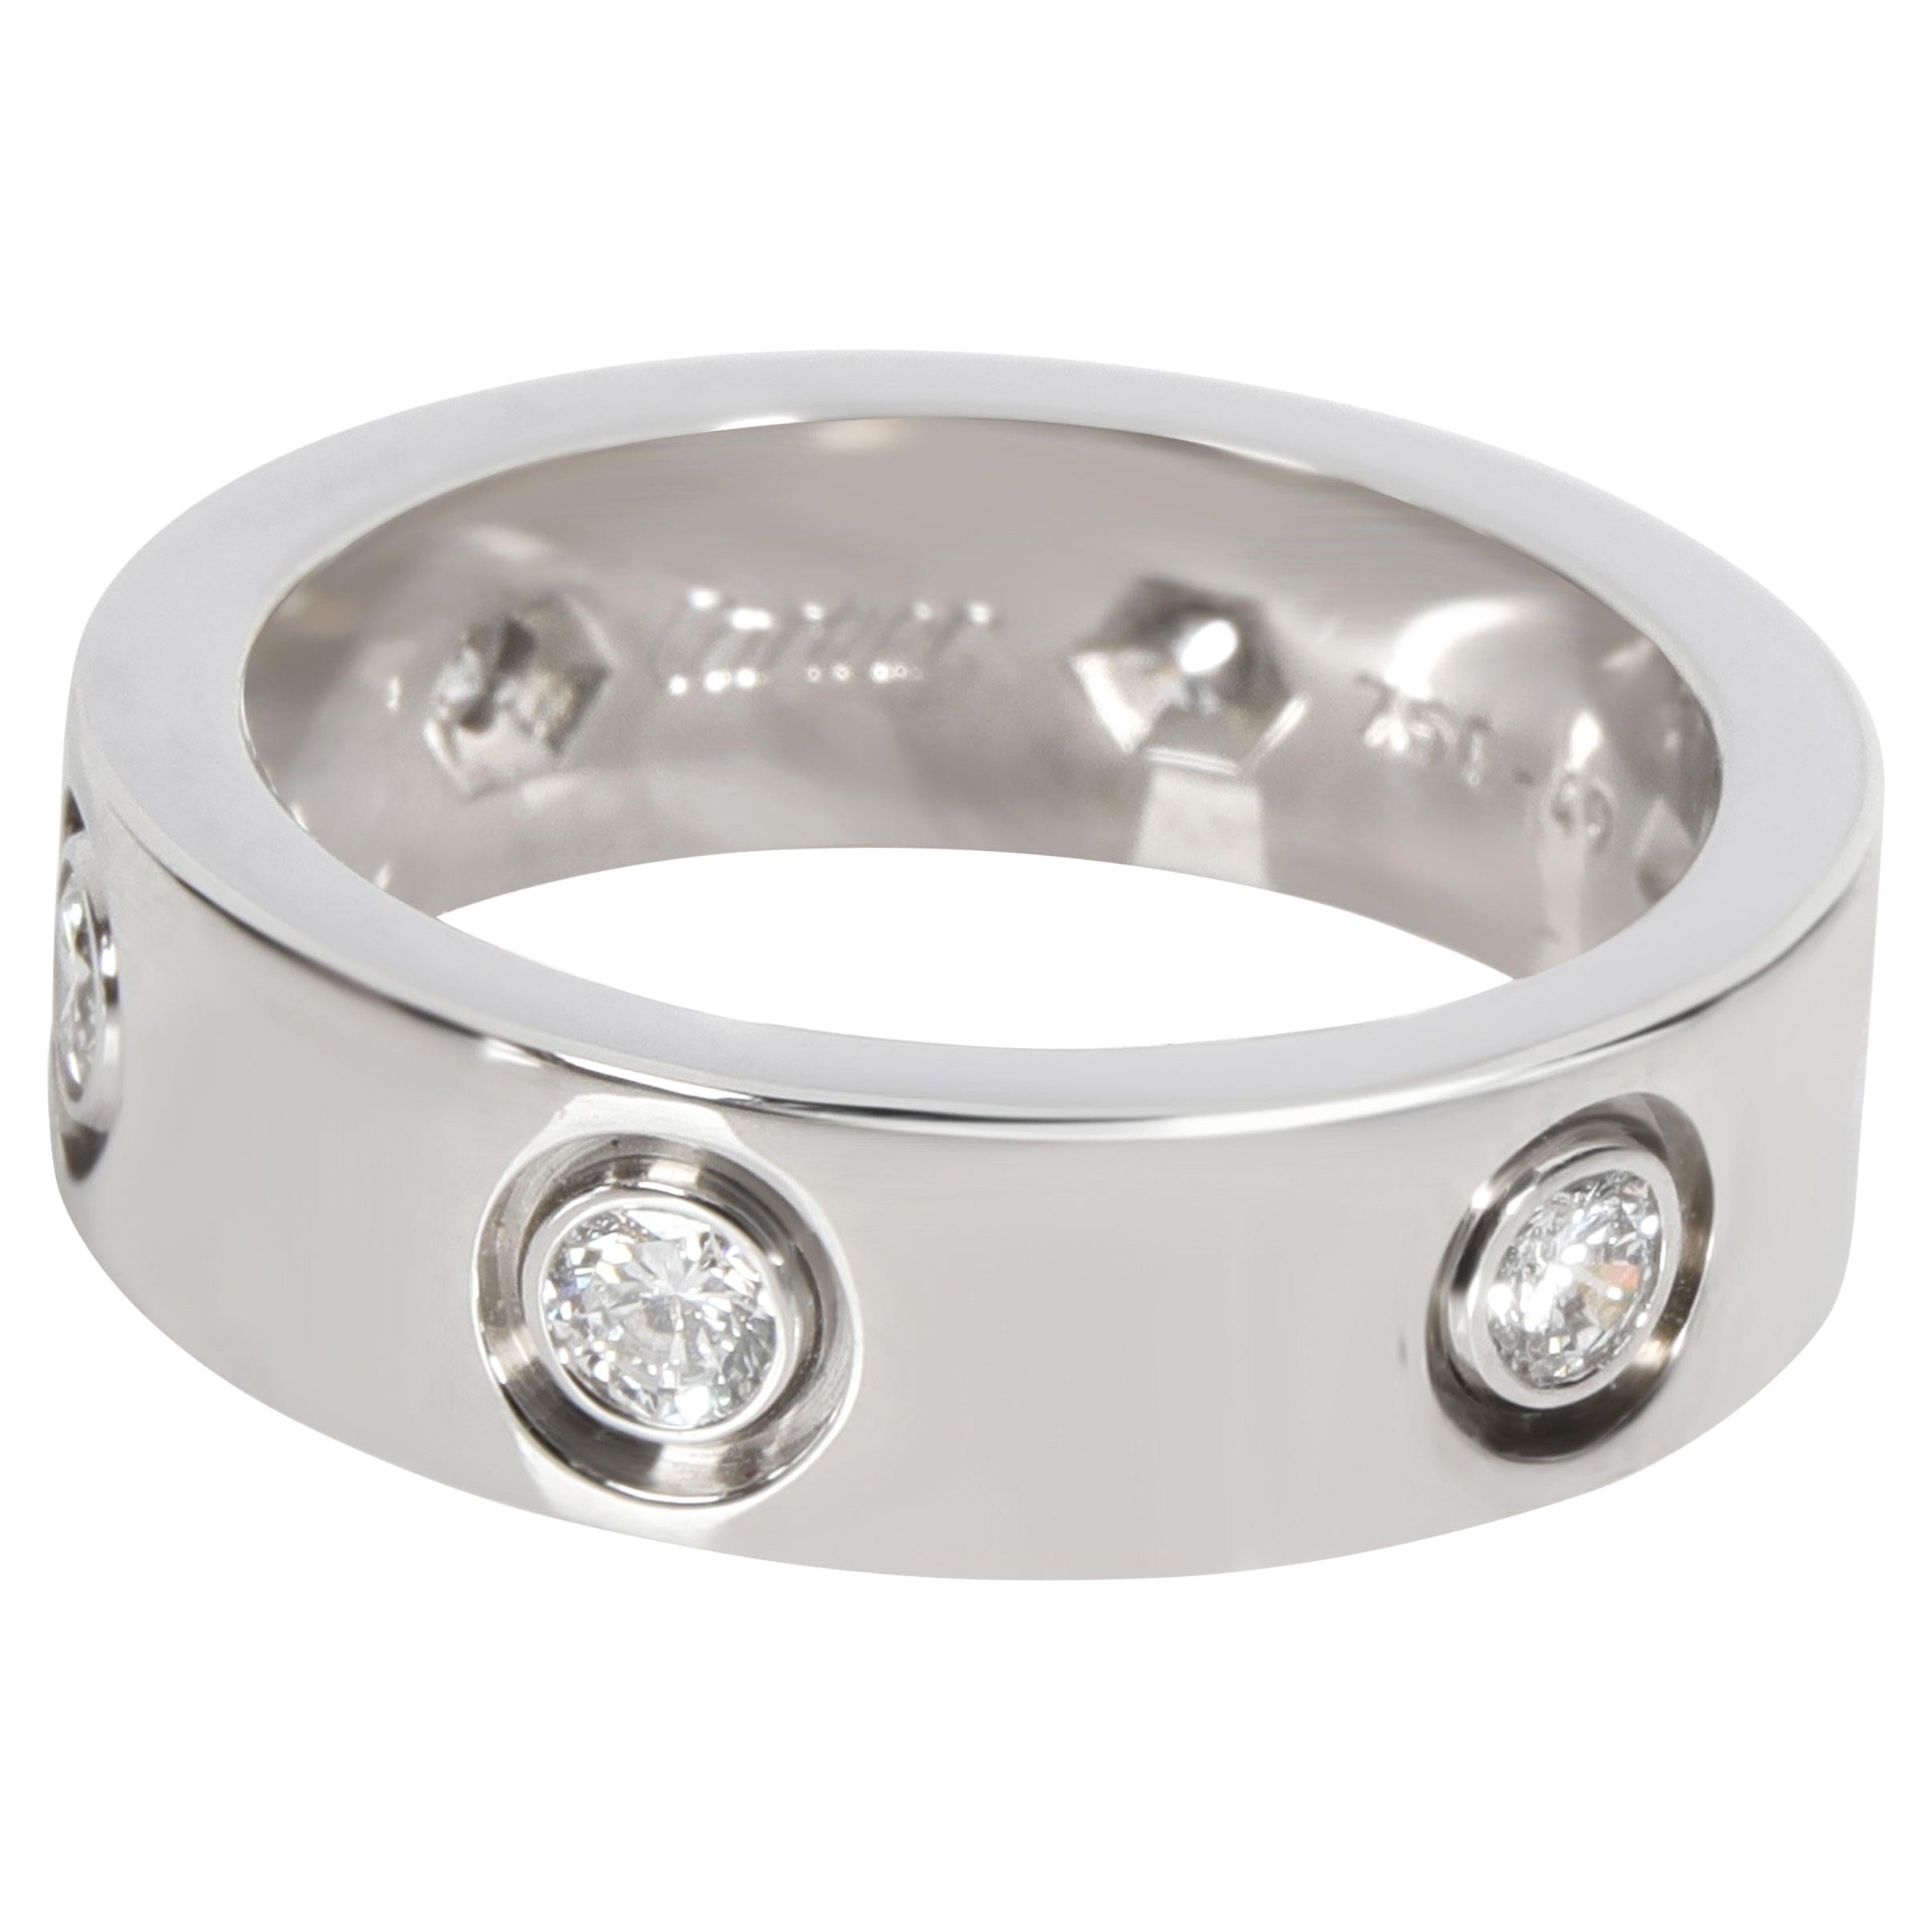 Cartier Bracelet Love en or blanc 18 carats avec diamants 0,46 carat poids total